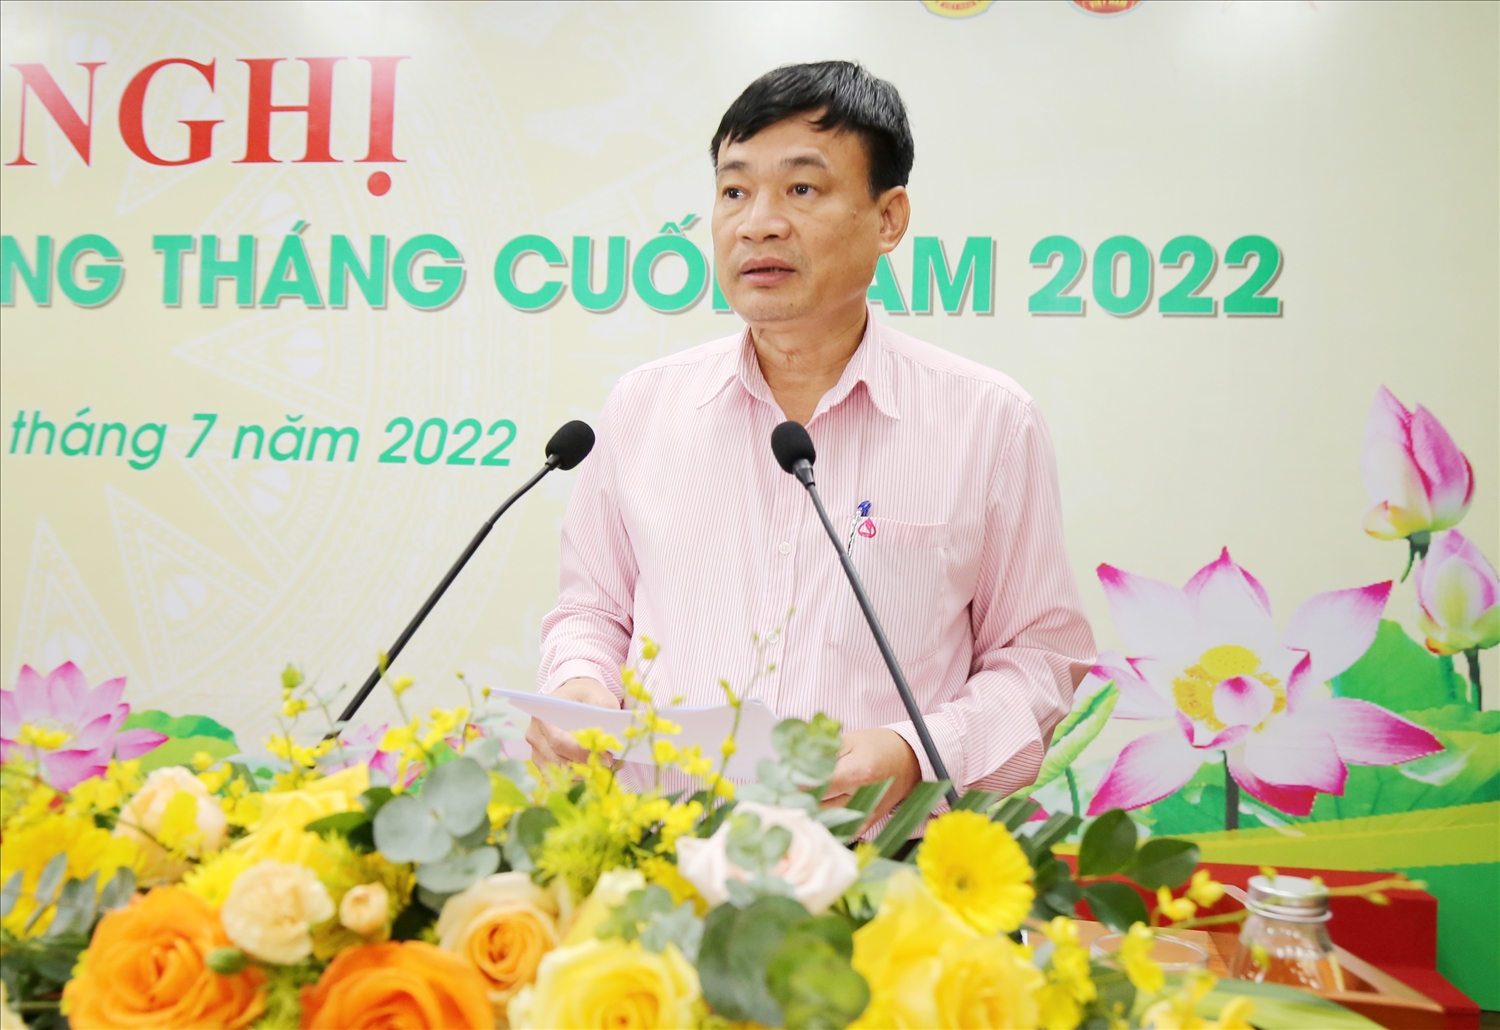 Phó Tổng Giám đốc Bùi Quang Vinh báo cáo kết quả hoạt động NHCSXH 6 tháng đầu năm 2022, phương hướng nhiệm vụ những tháng cuối năm 2022